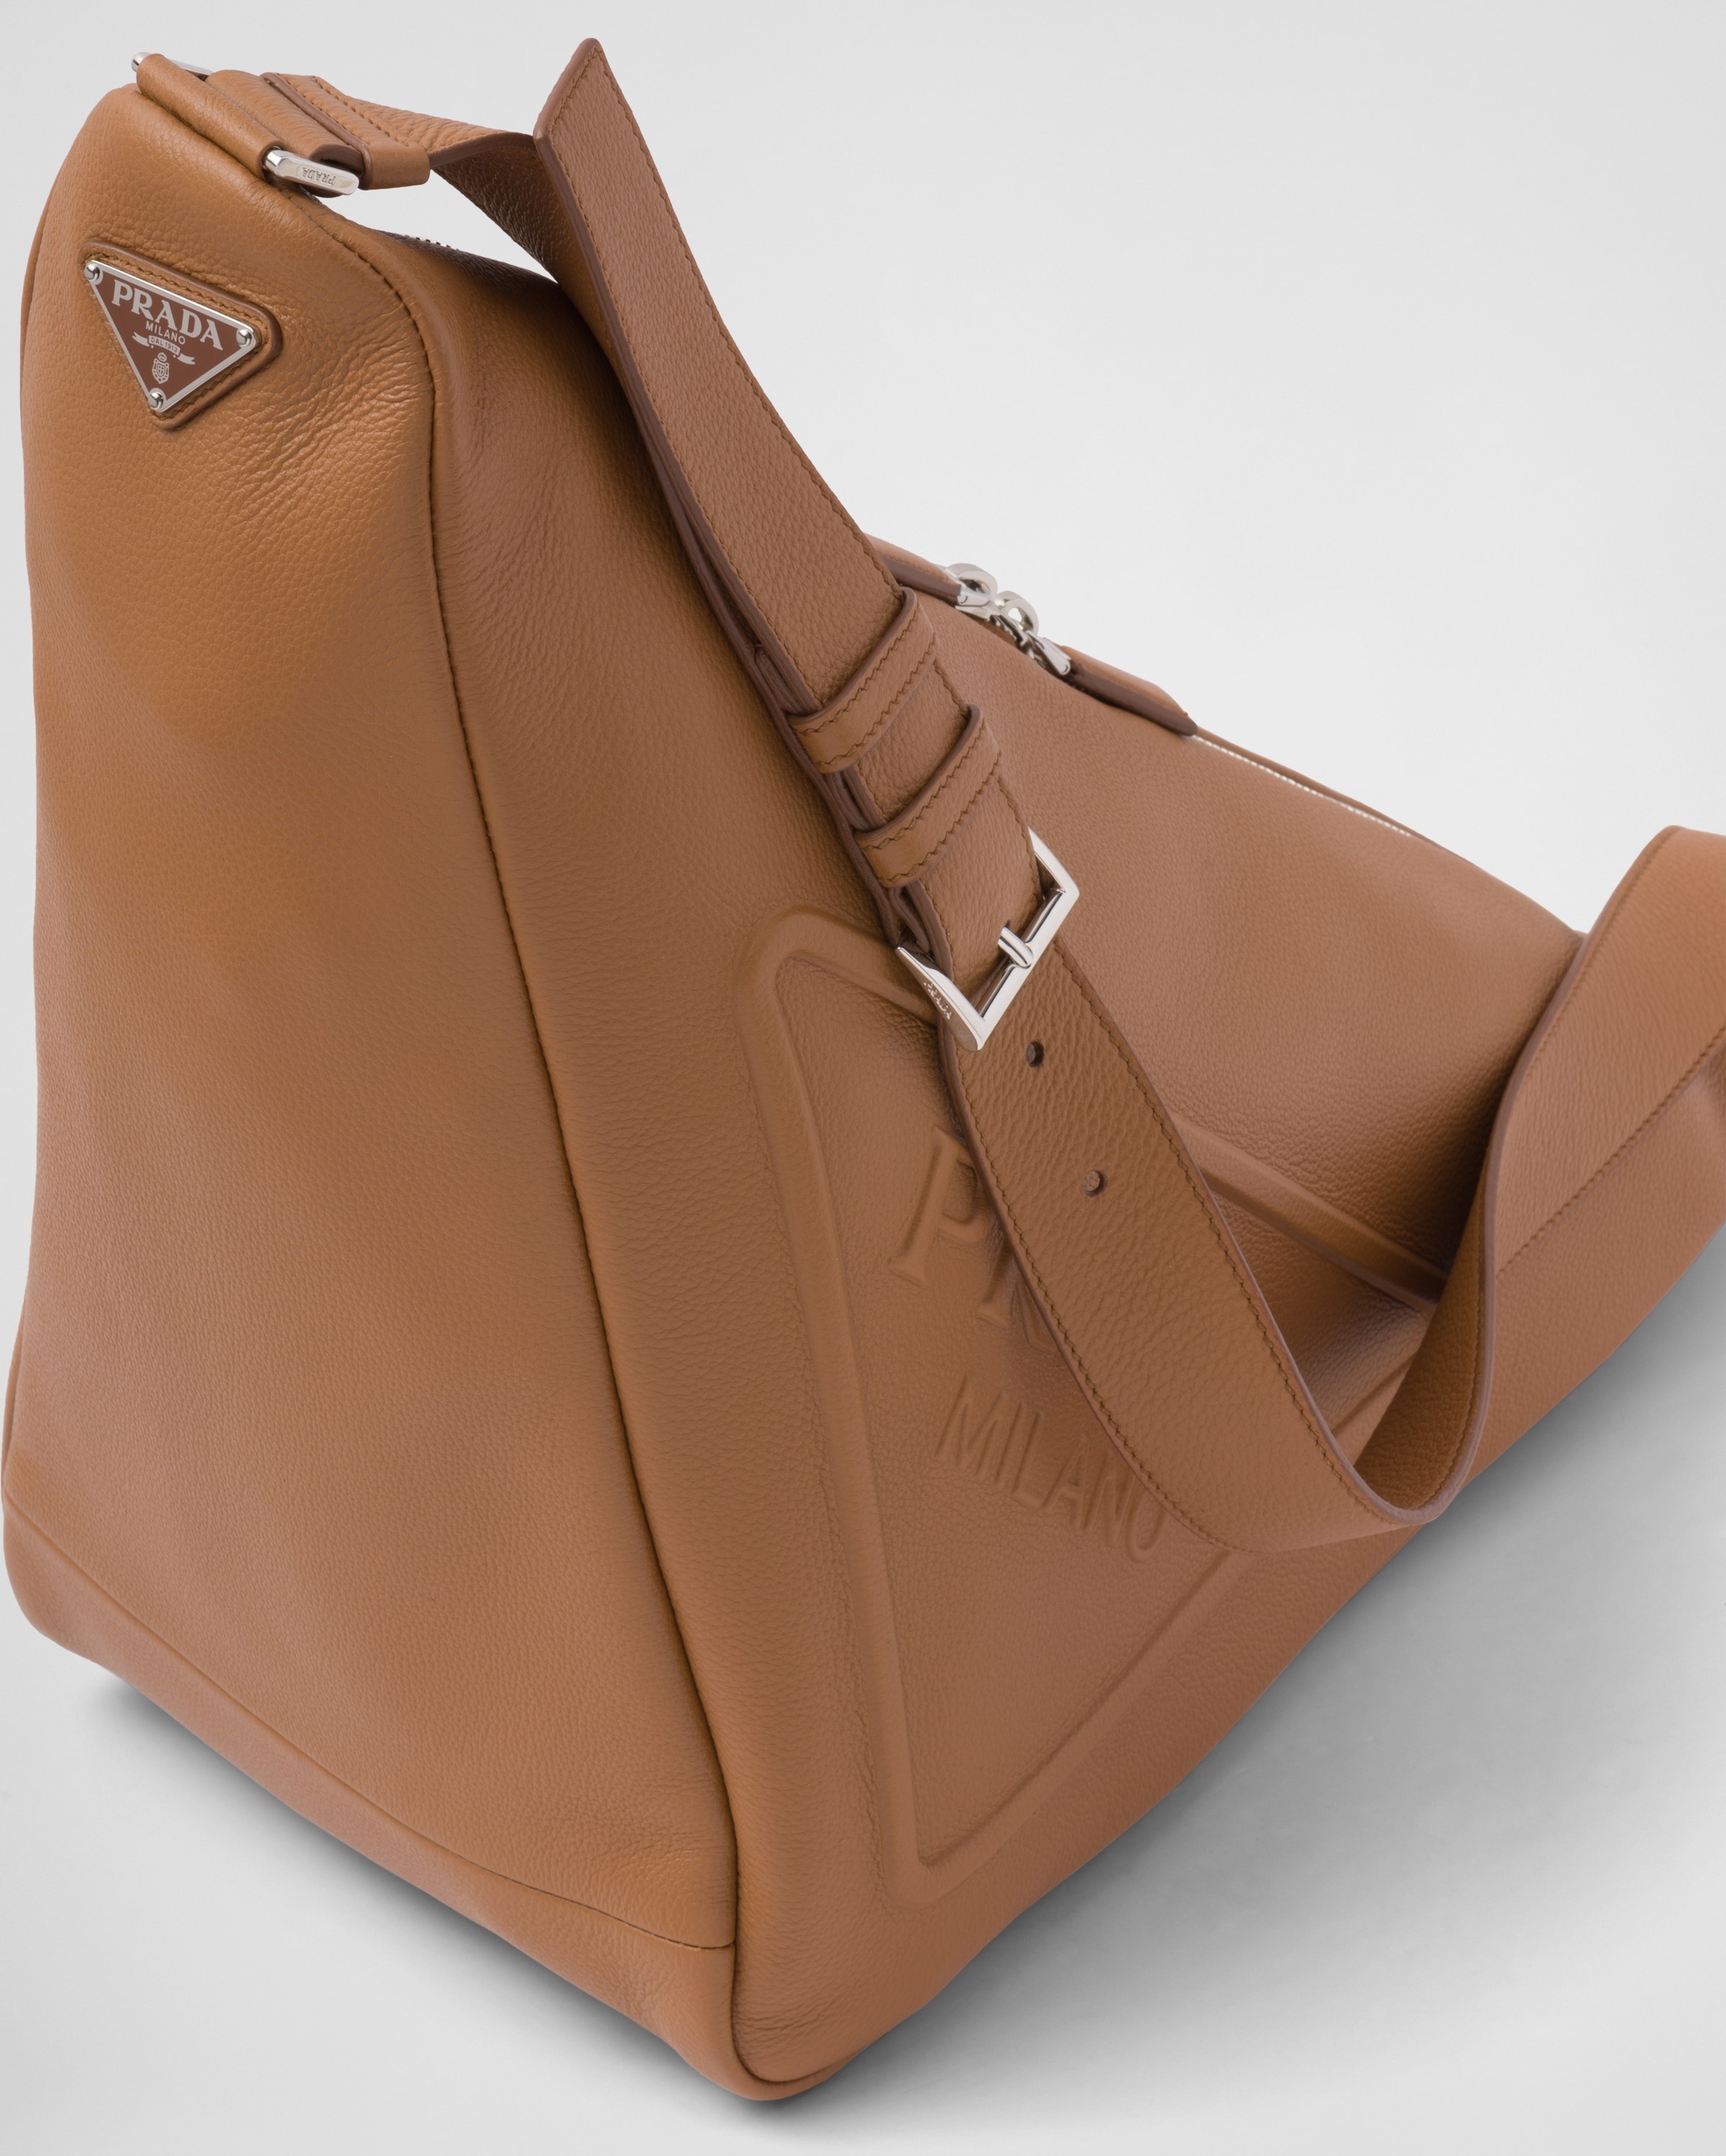 Large leather Prada Triangle bag - 6